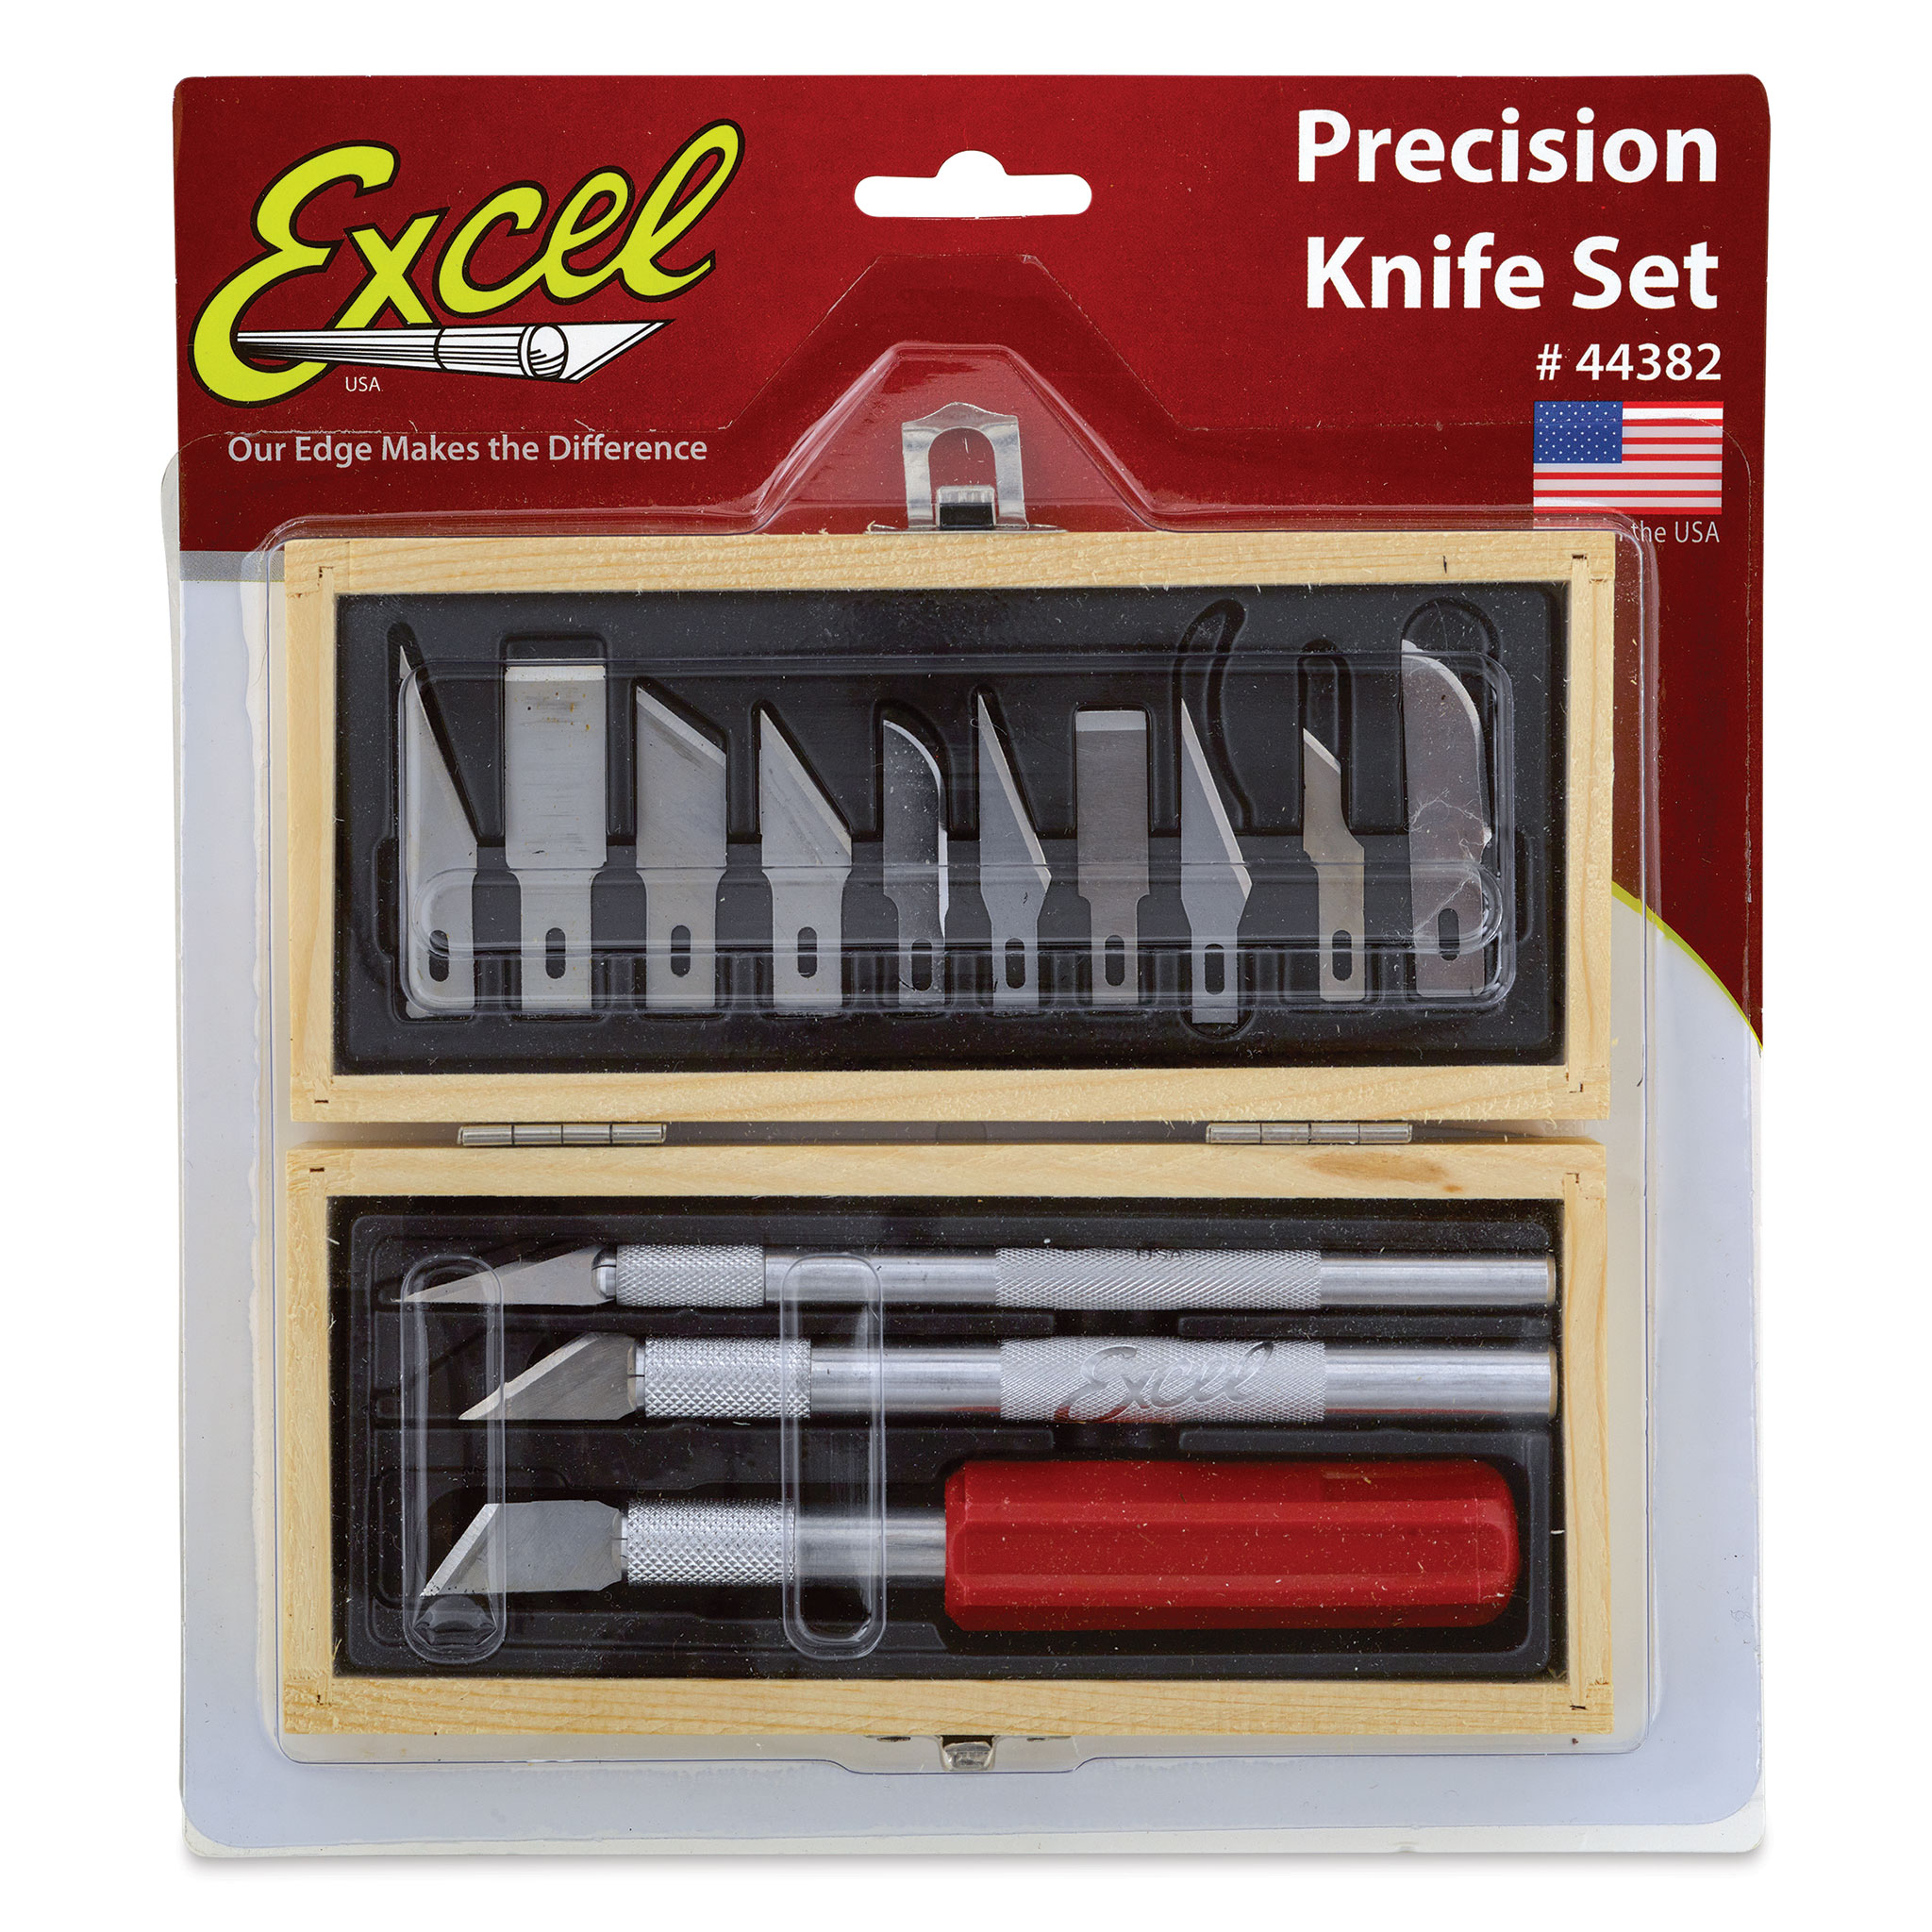 Excel Knife Set Includes #1, #2, #5 Knives & Blades